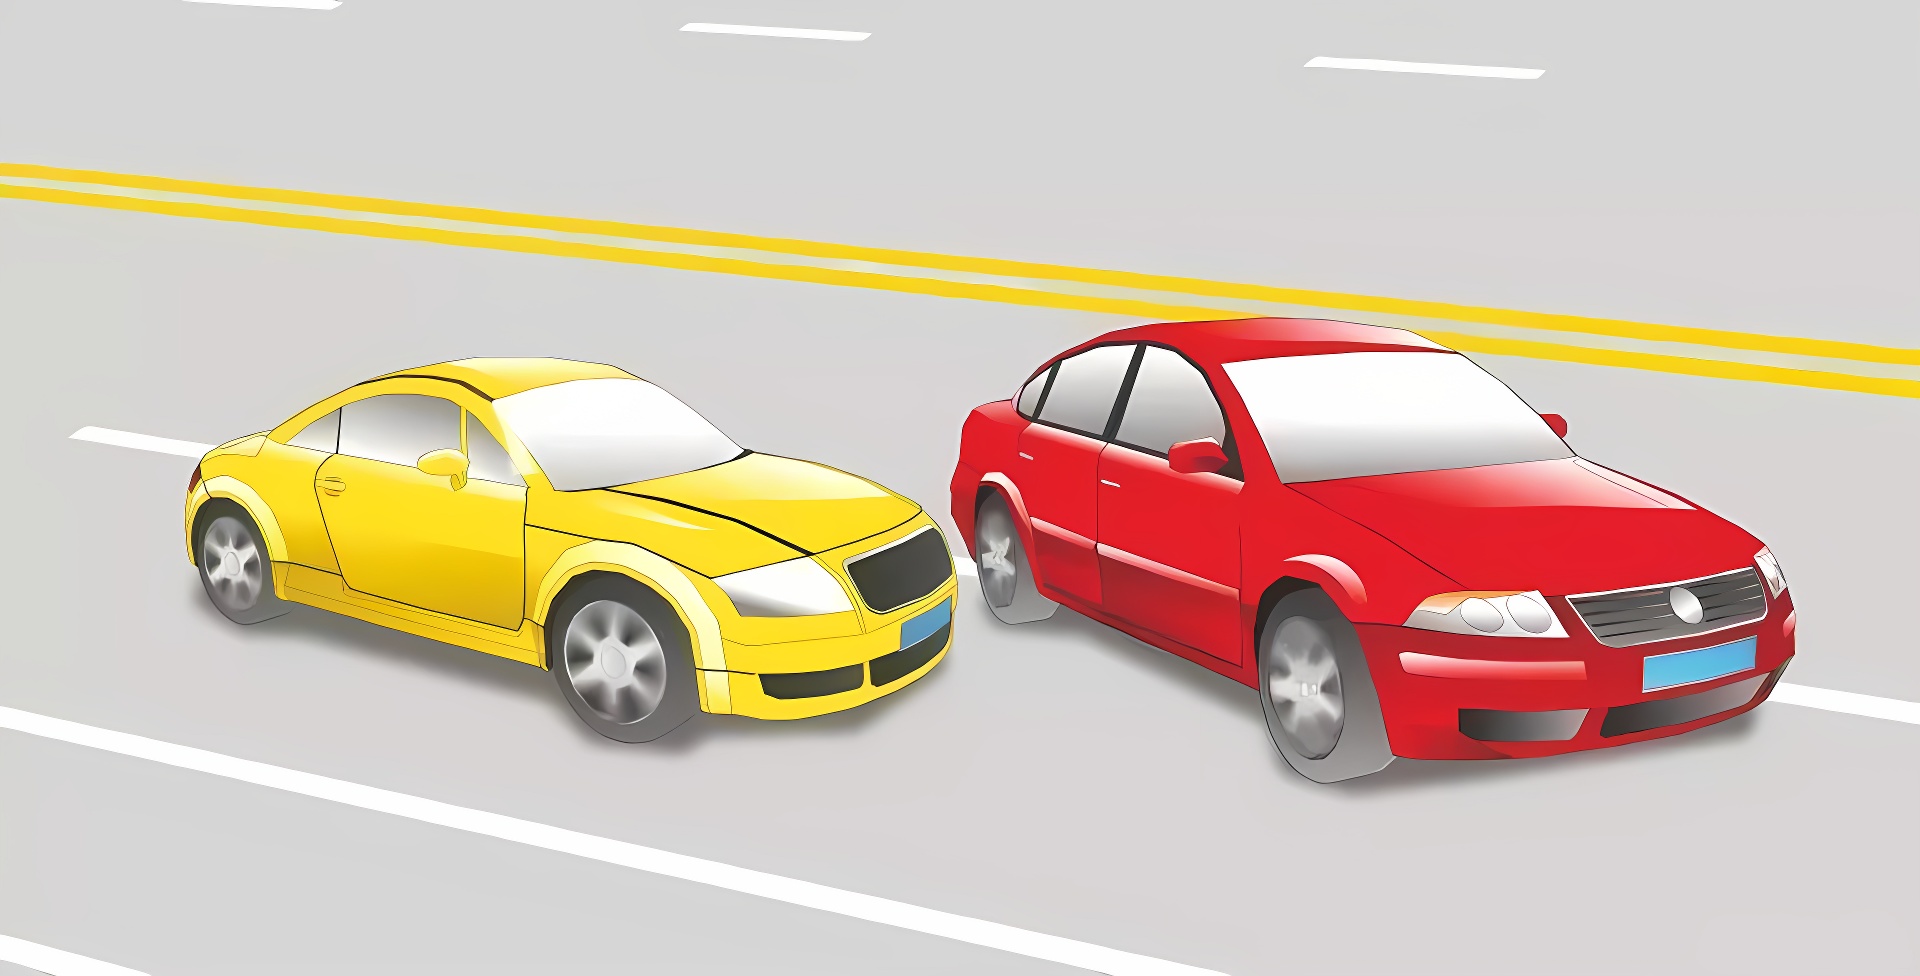 这辆红色轿车变更车道的方法和路线是正确的。题目图片